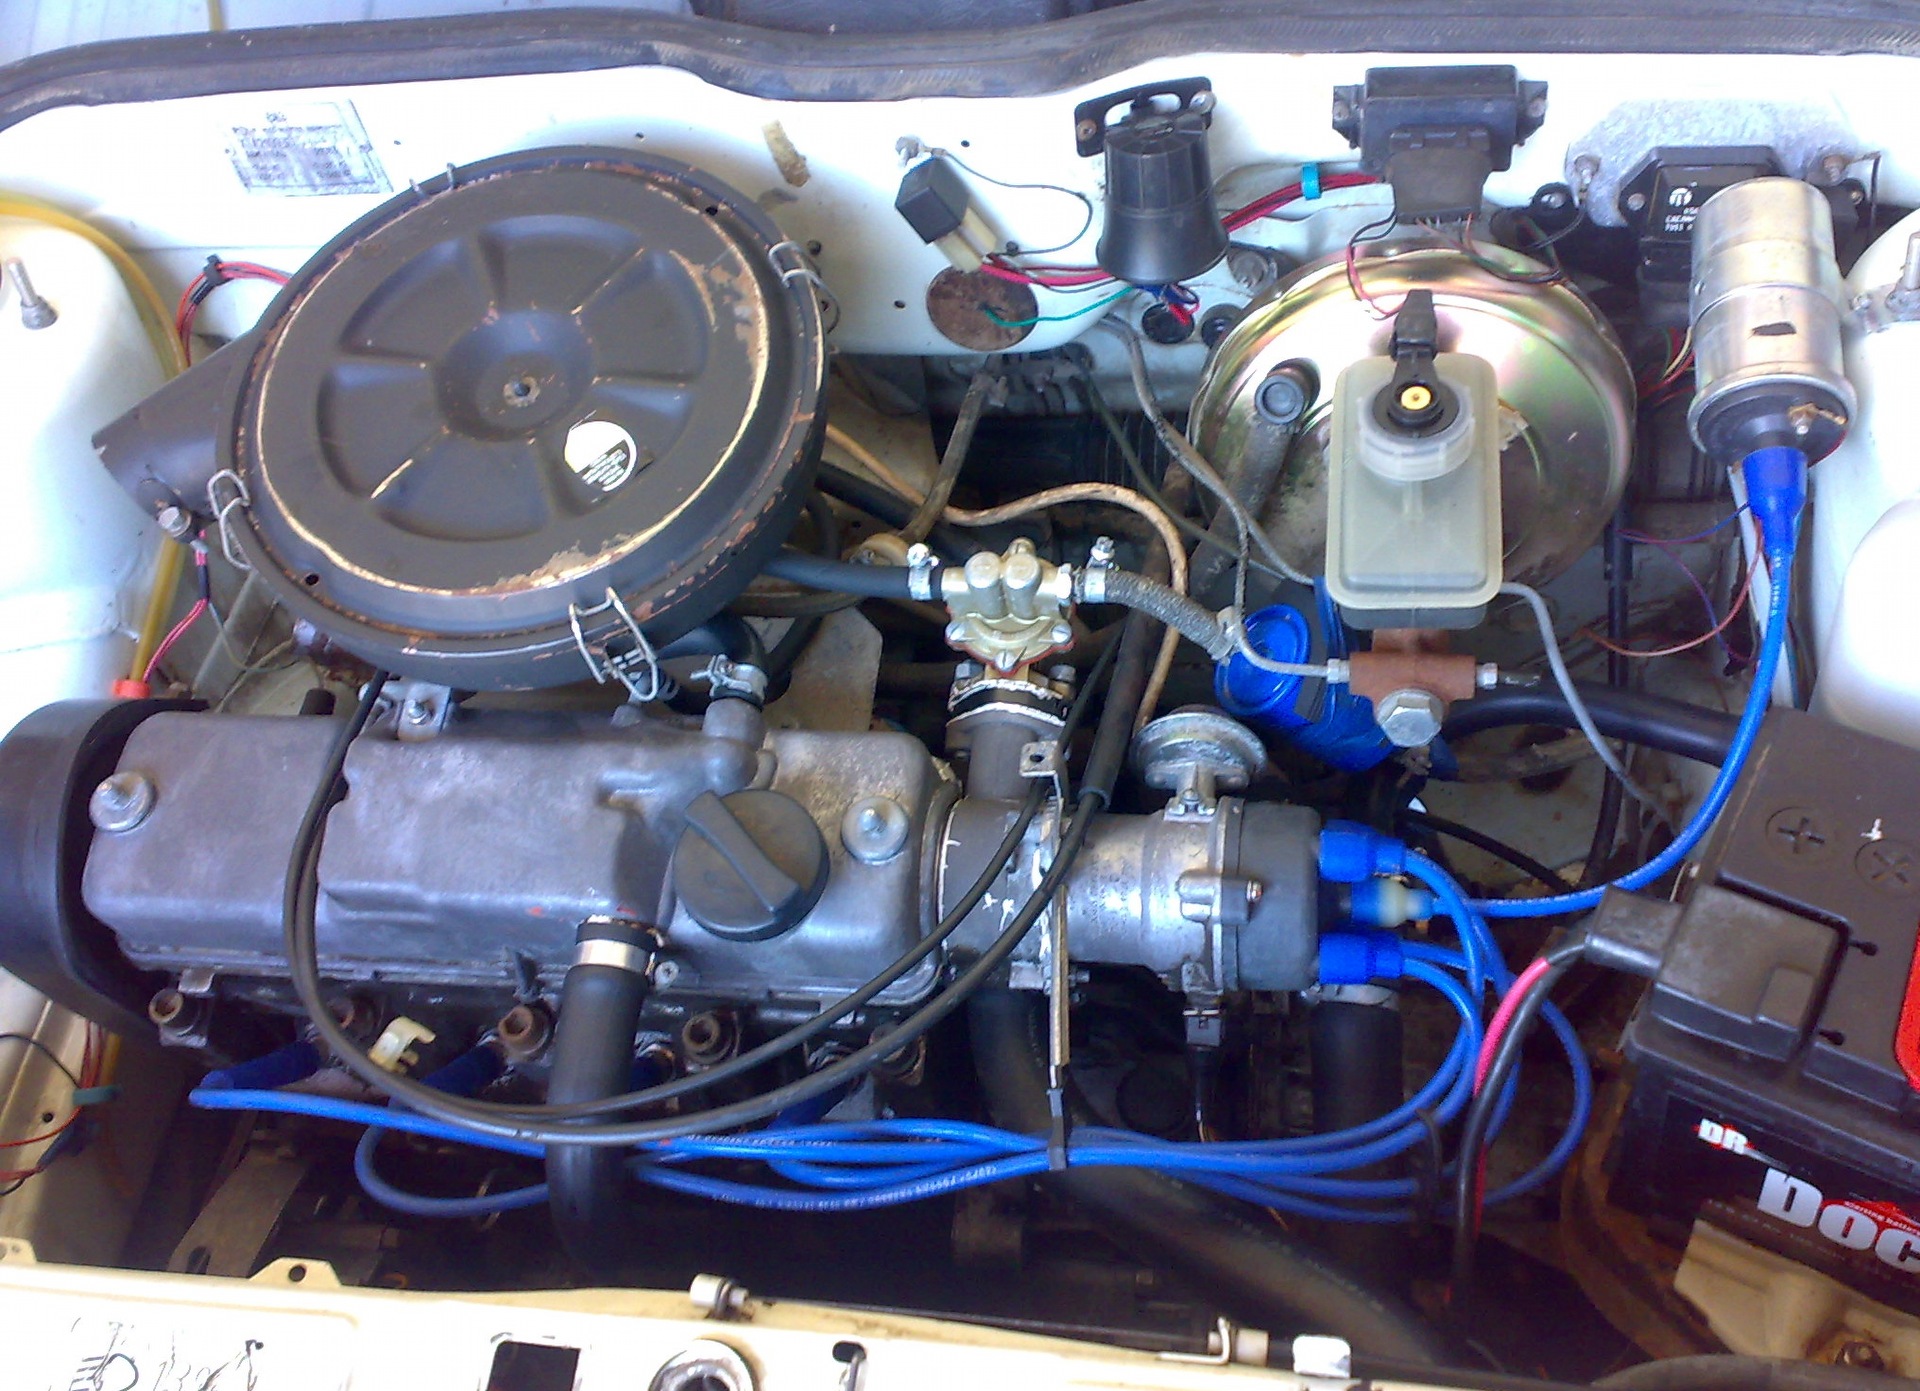 Ремонт двигателя 2109. Двигатель ВАЗ 2109 карбюратор. Карбюраторный мотор ВАЗ 2109. ДВС ВАЗ 2109 карбюратор. ВАЗ 2109 карбюраторная.